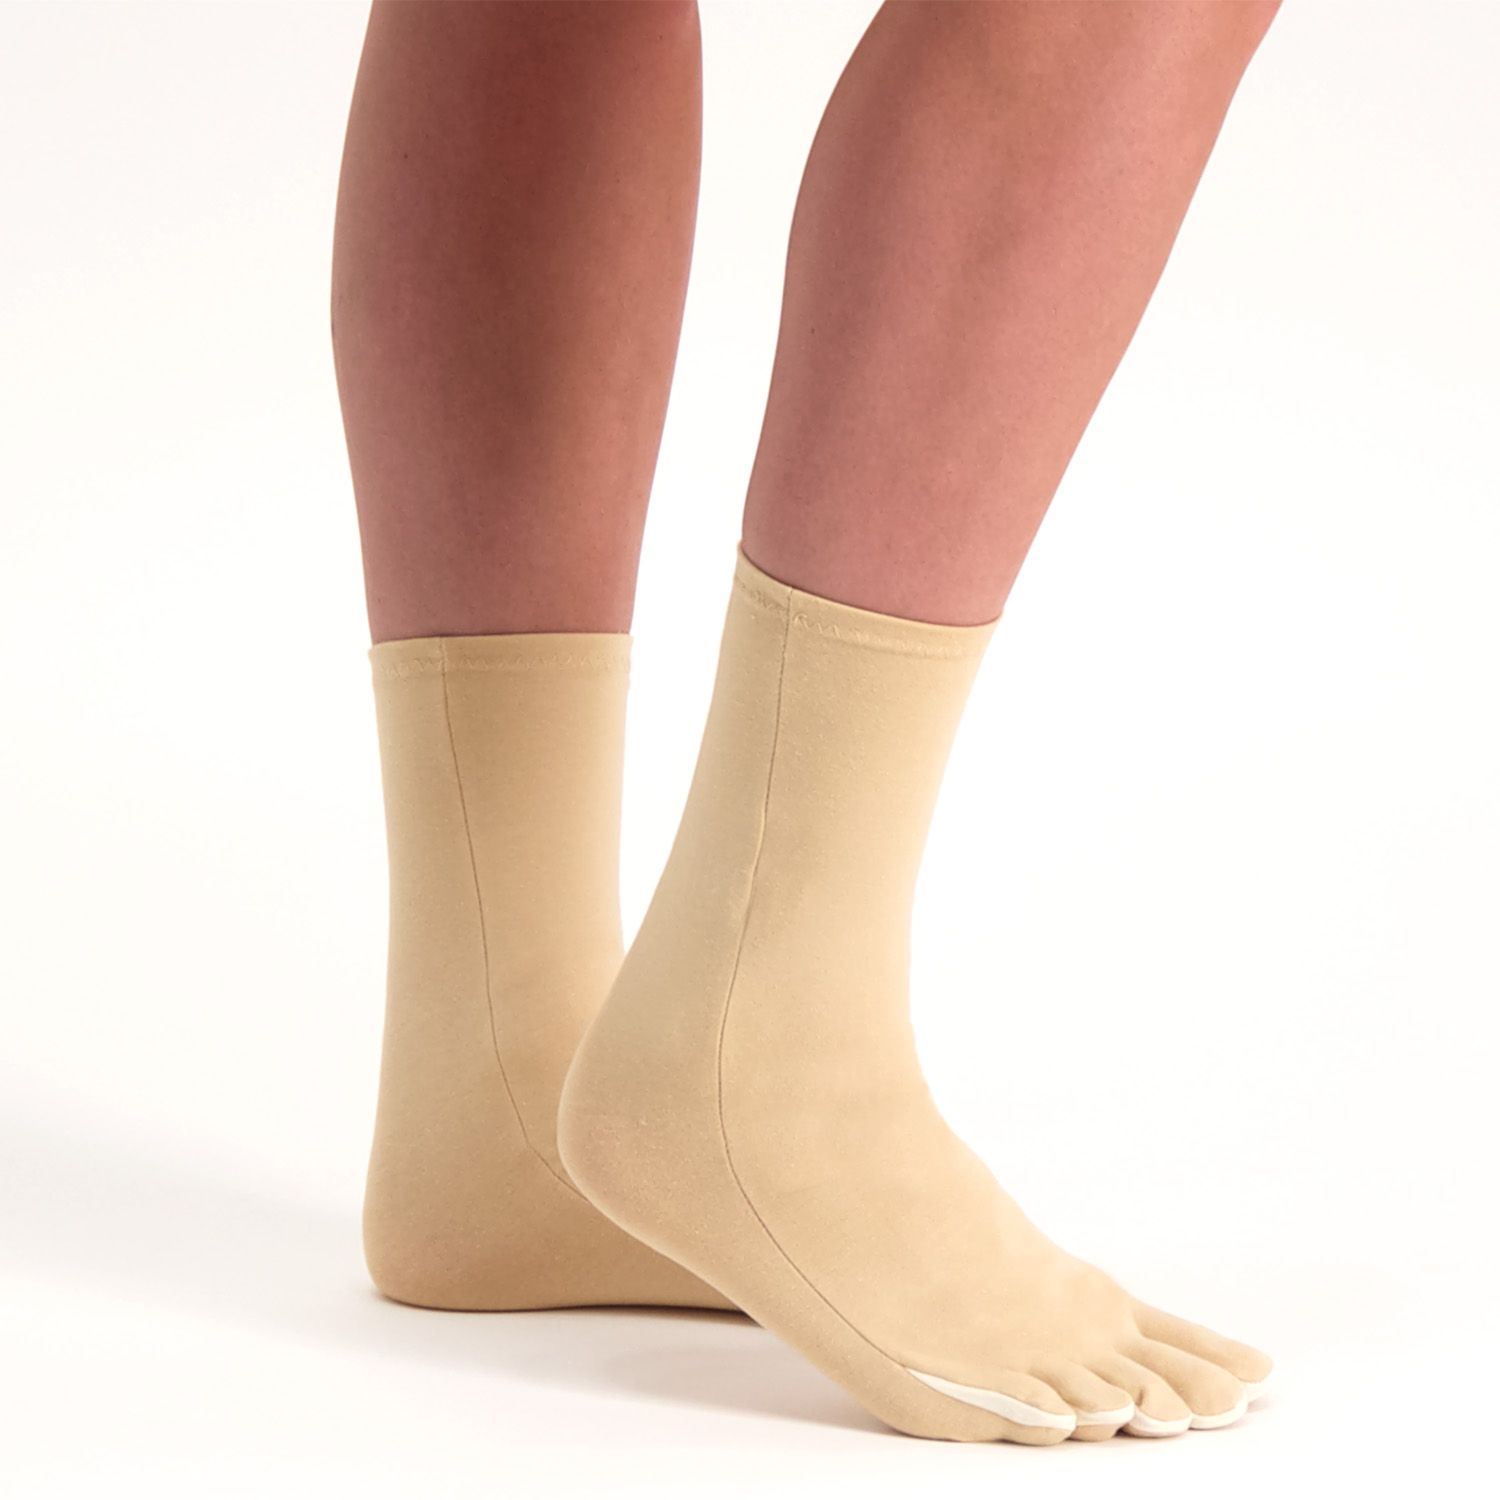 raynaud's disease socks zoomed in